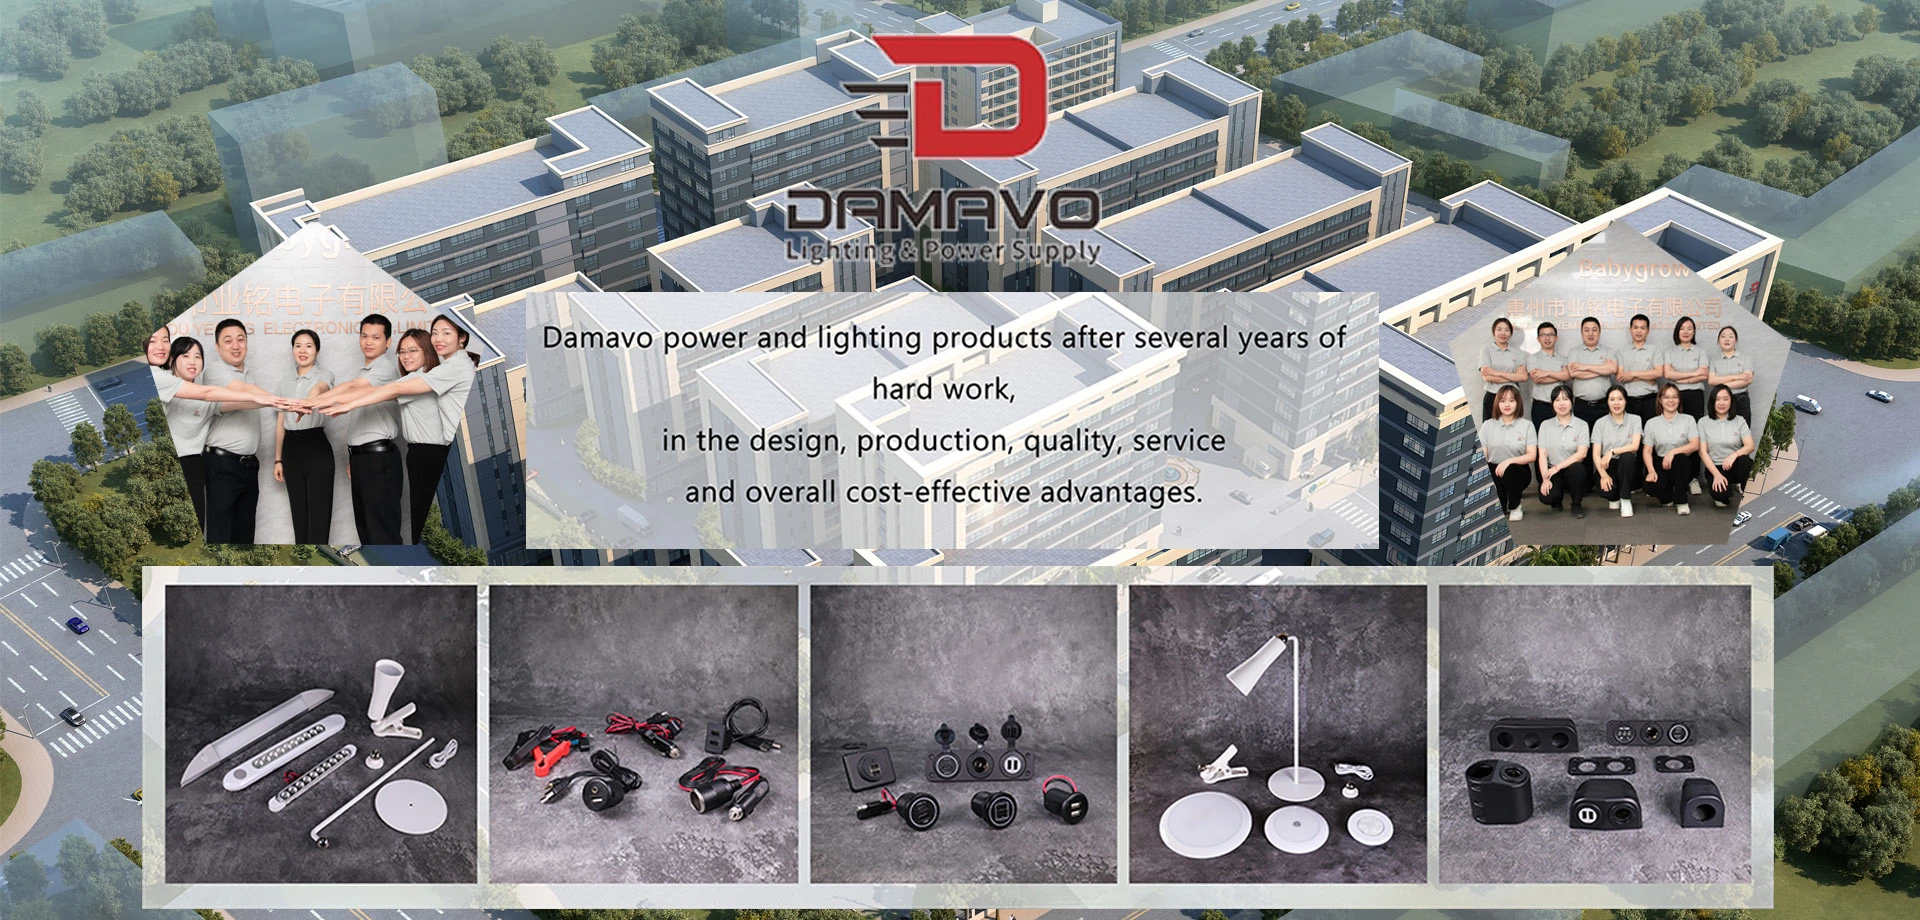 power socket extension, plug socket extension, 12 socket extension factory - DAMAVO